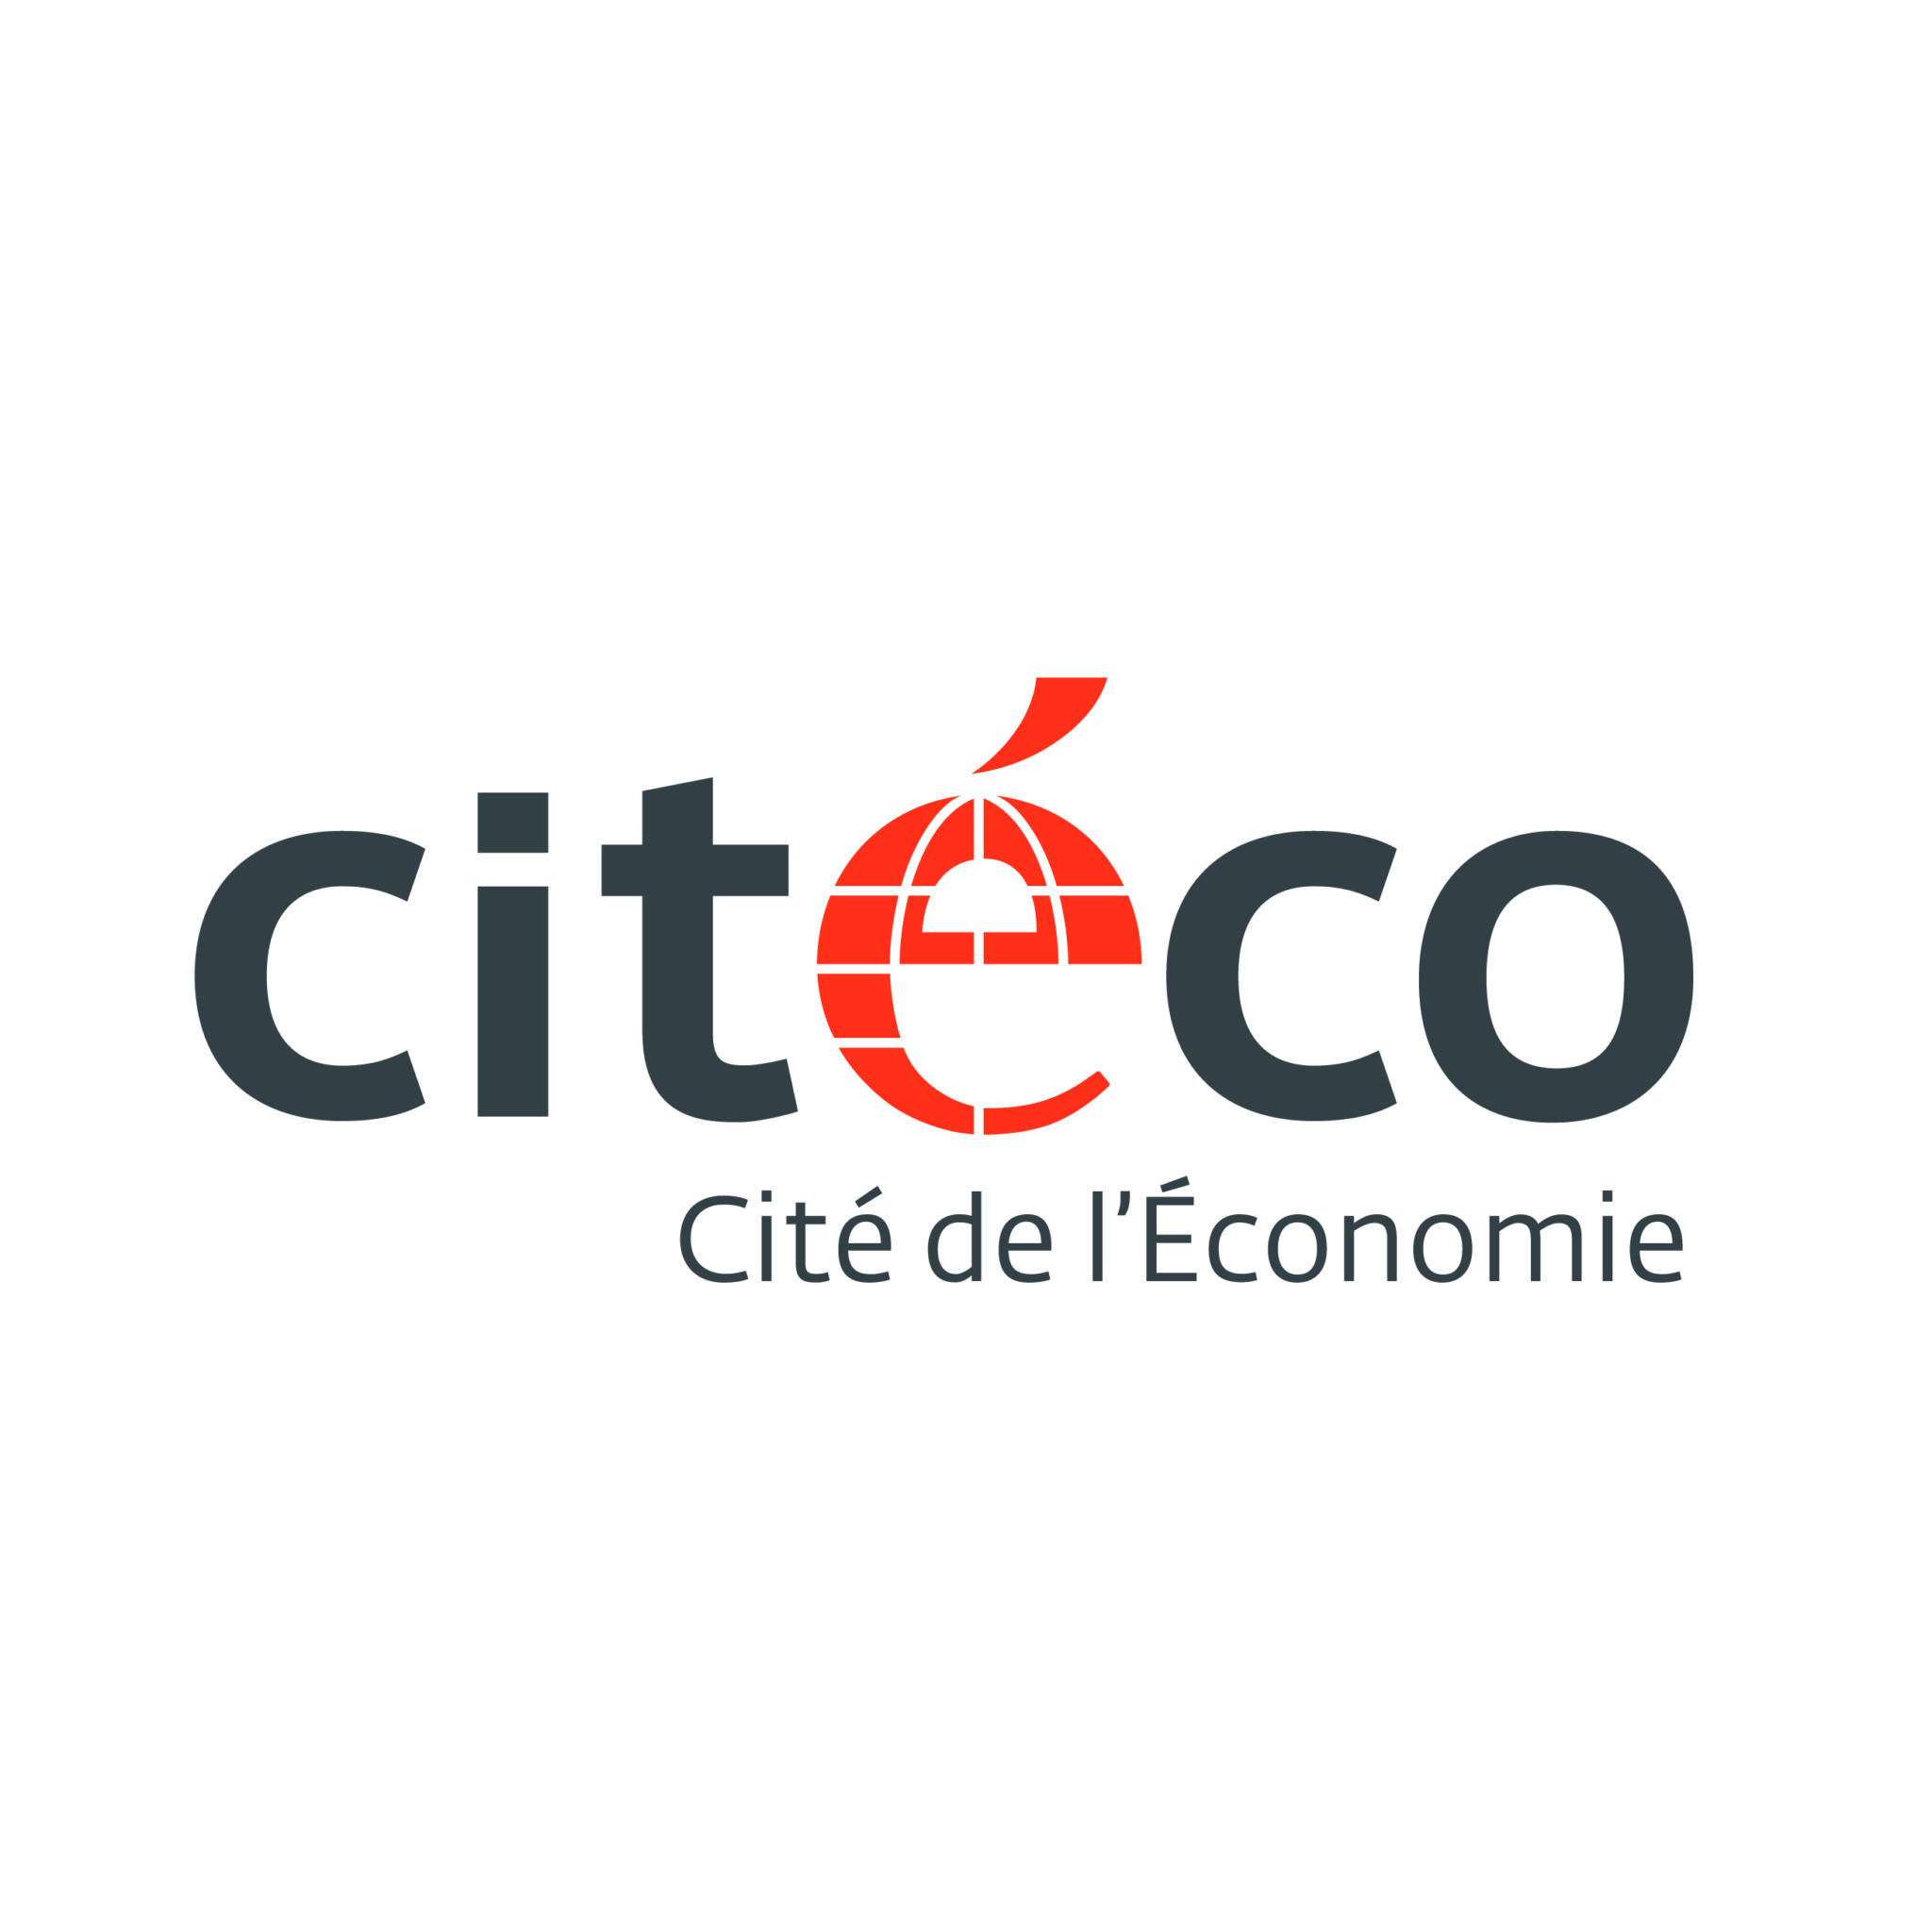 Citéco – Cité de l’économie